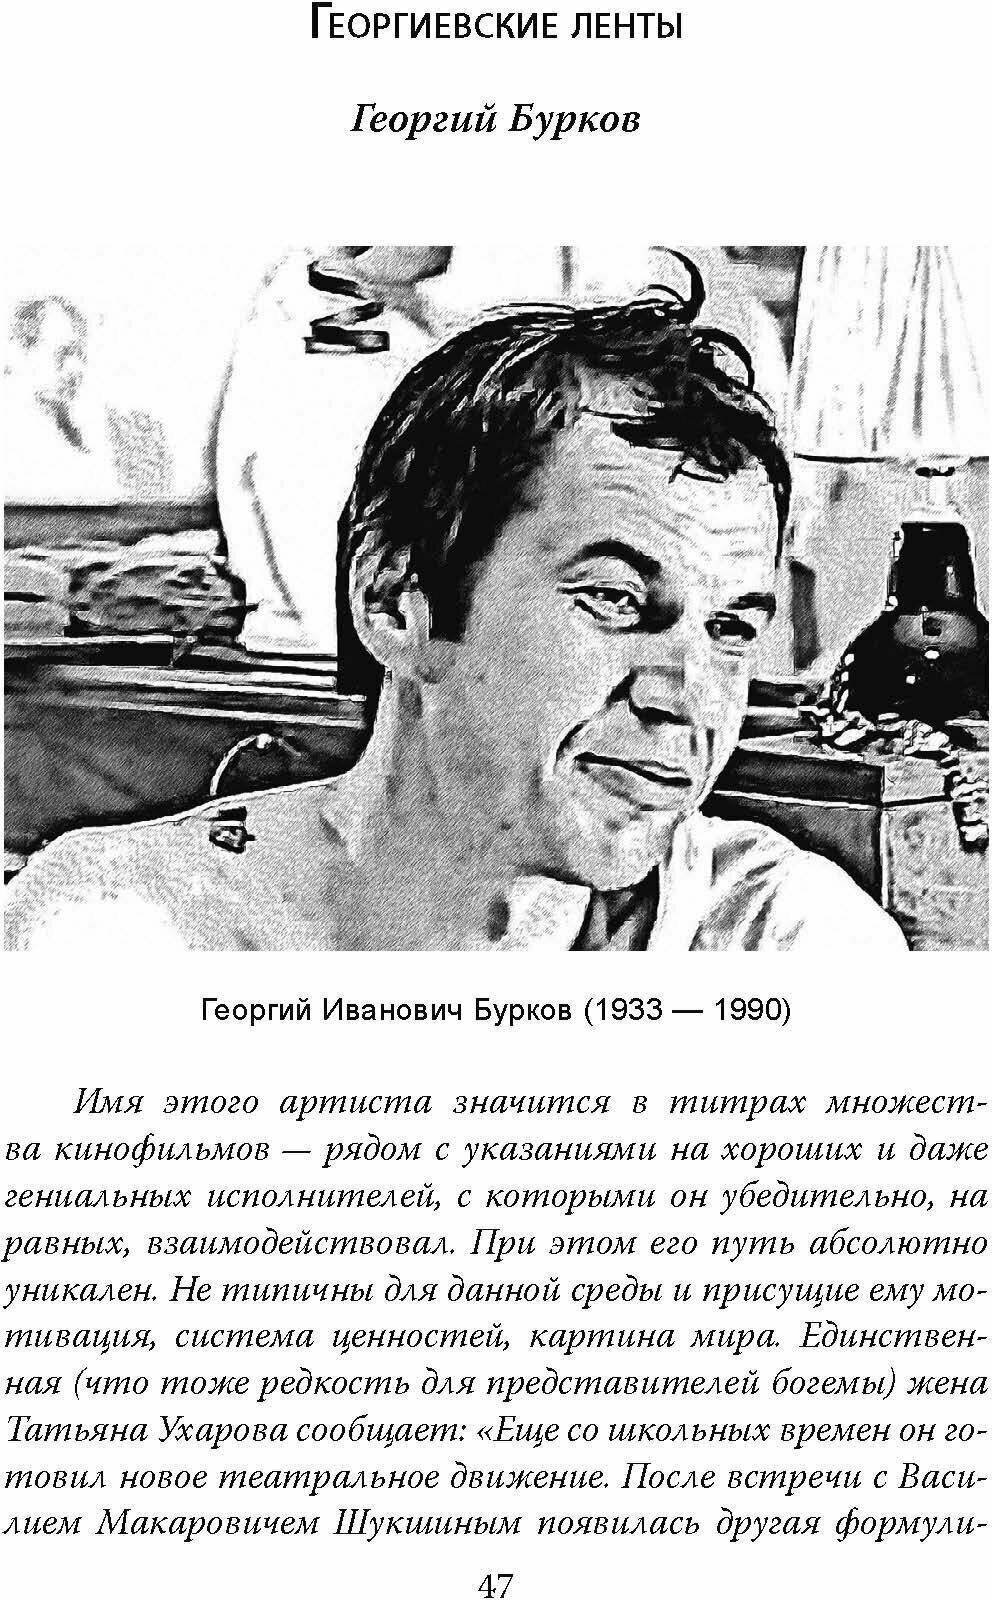 Стоп-кадр. Легенды советского кино - фото №8